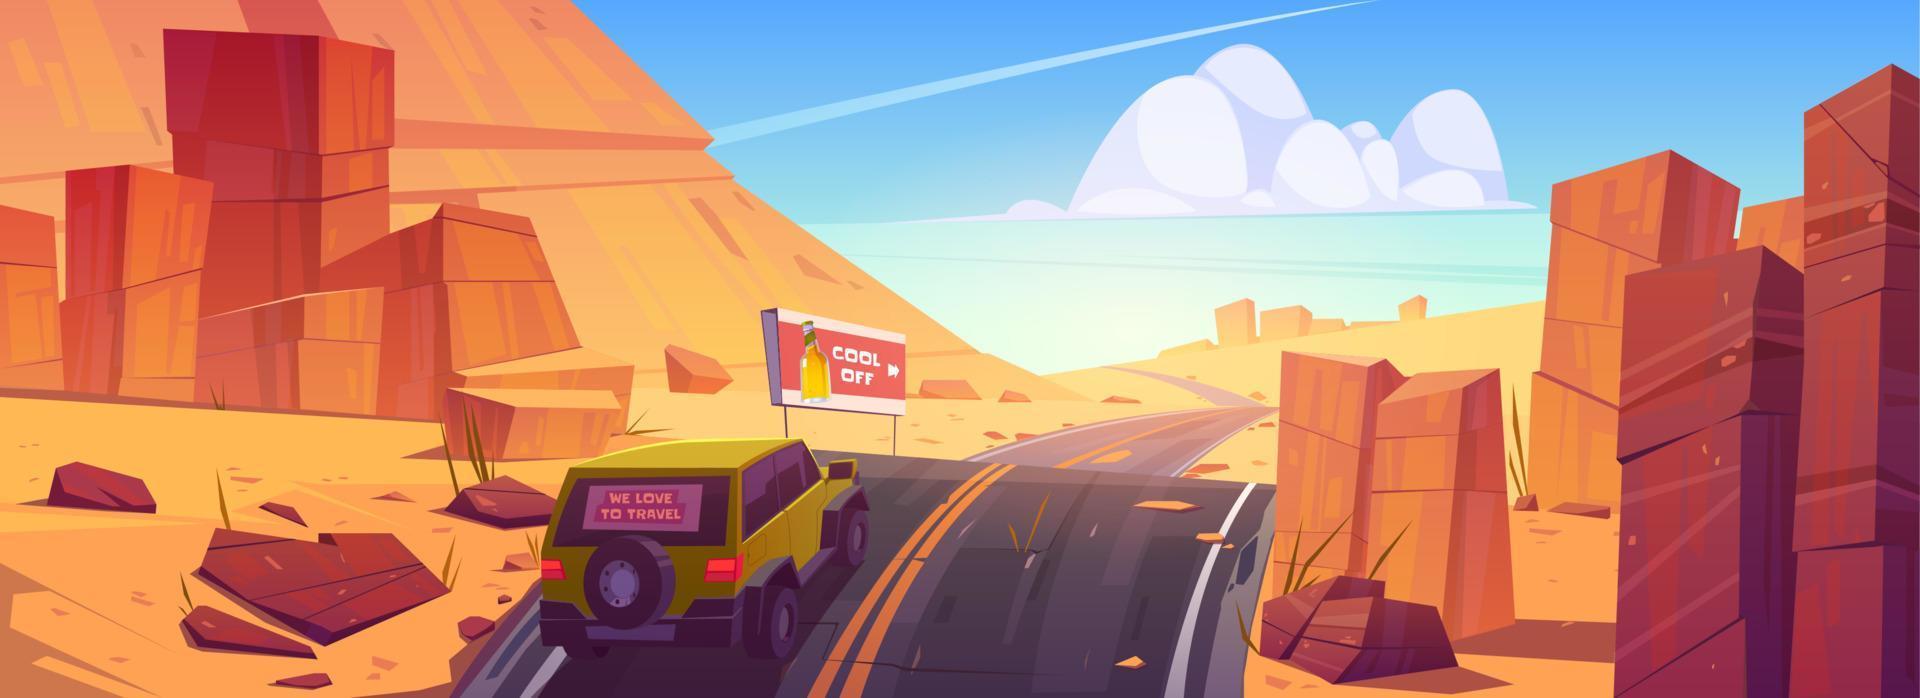 estrada de condução de carro na paisagem do deserto ou canyon vetor